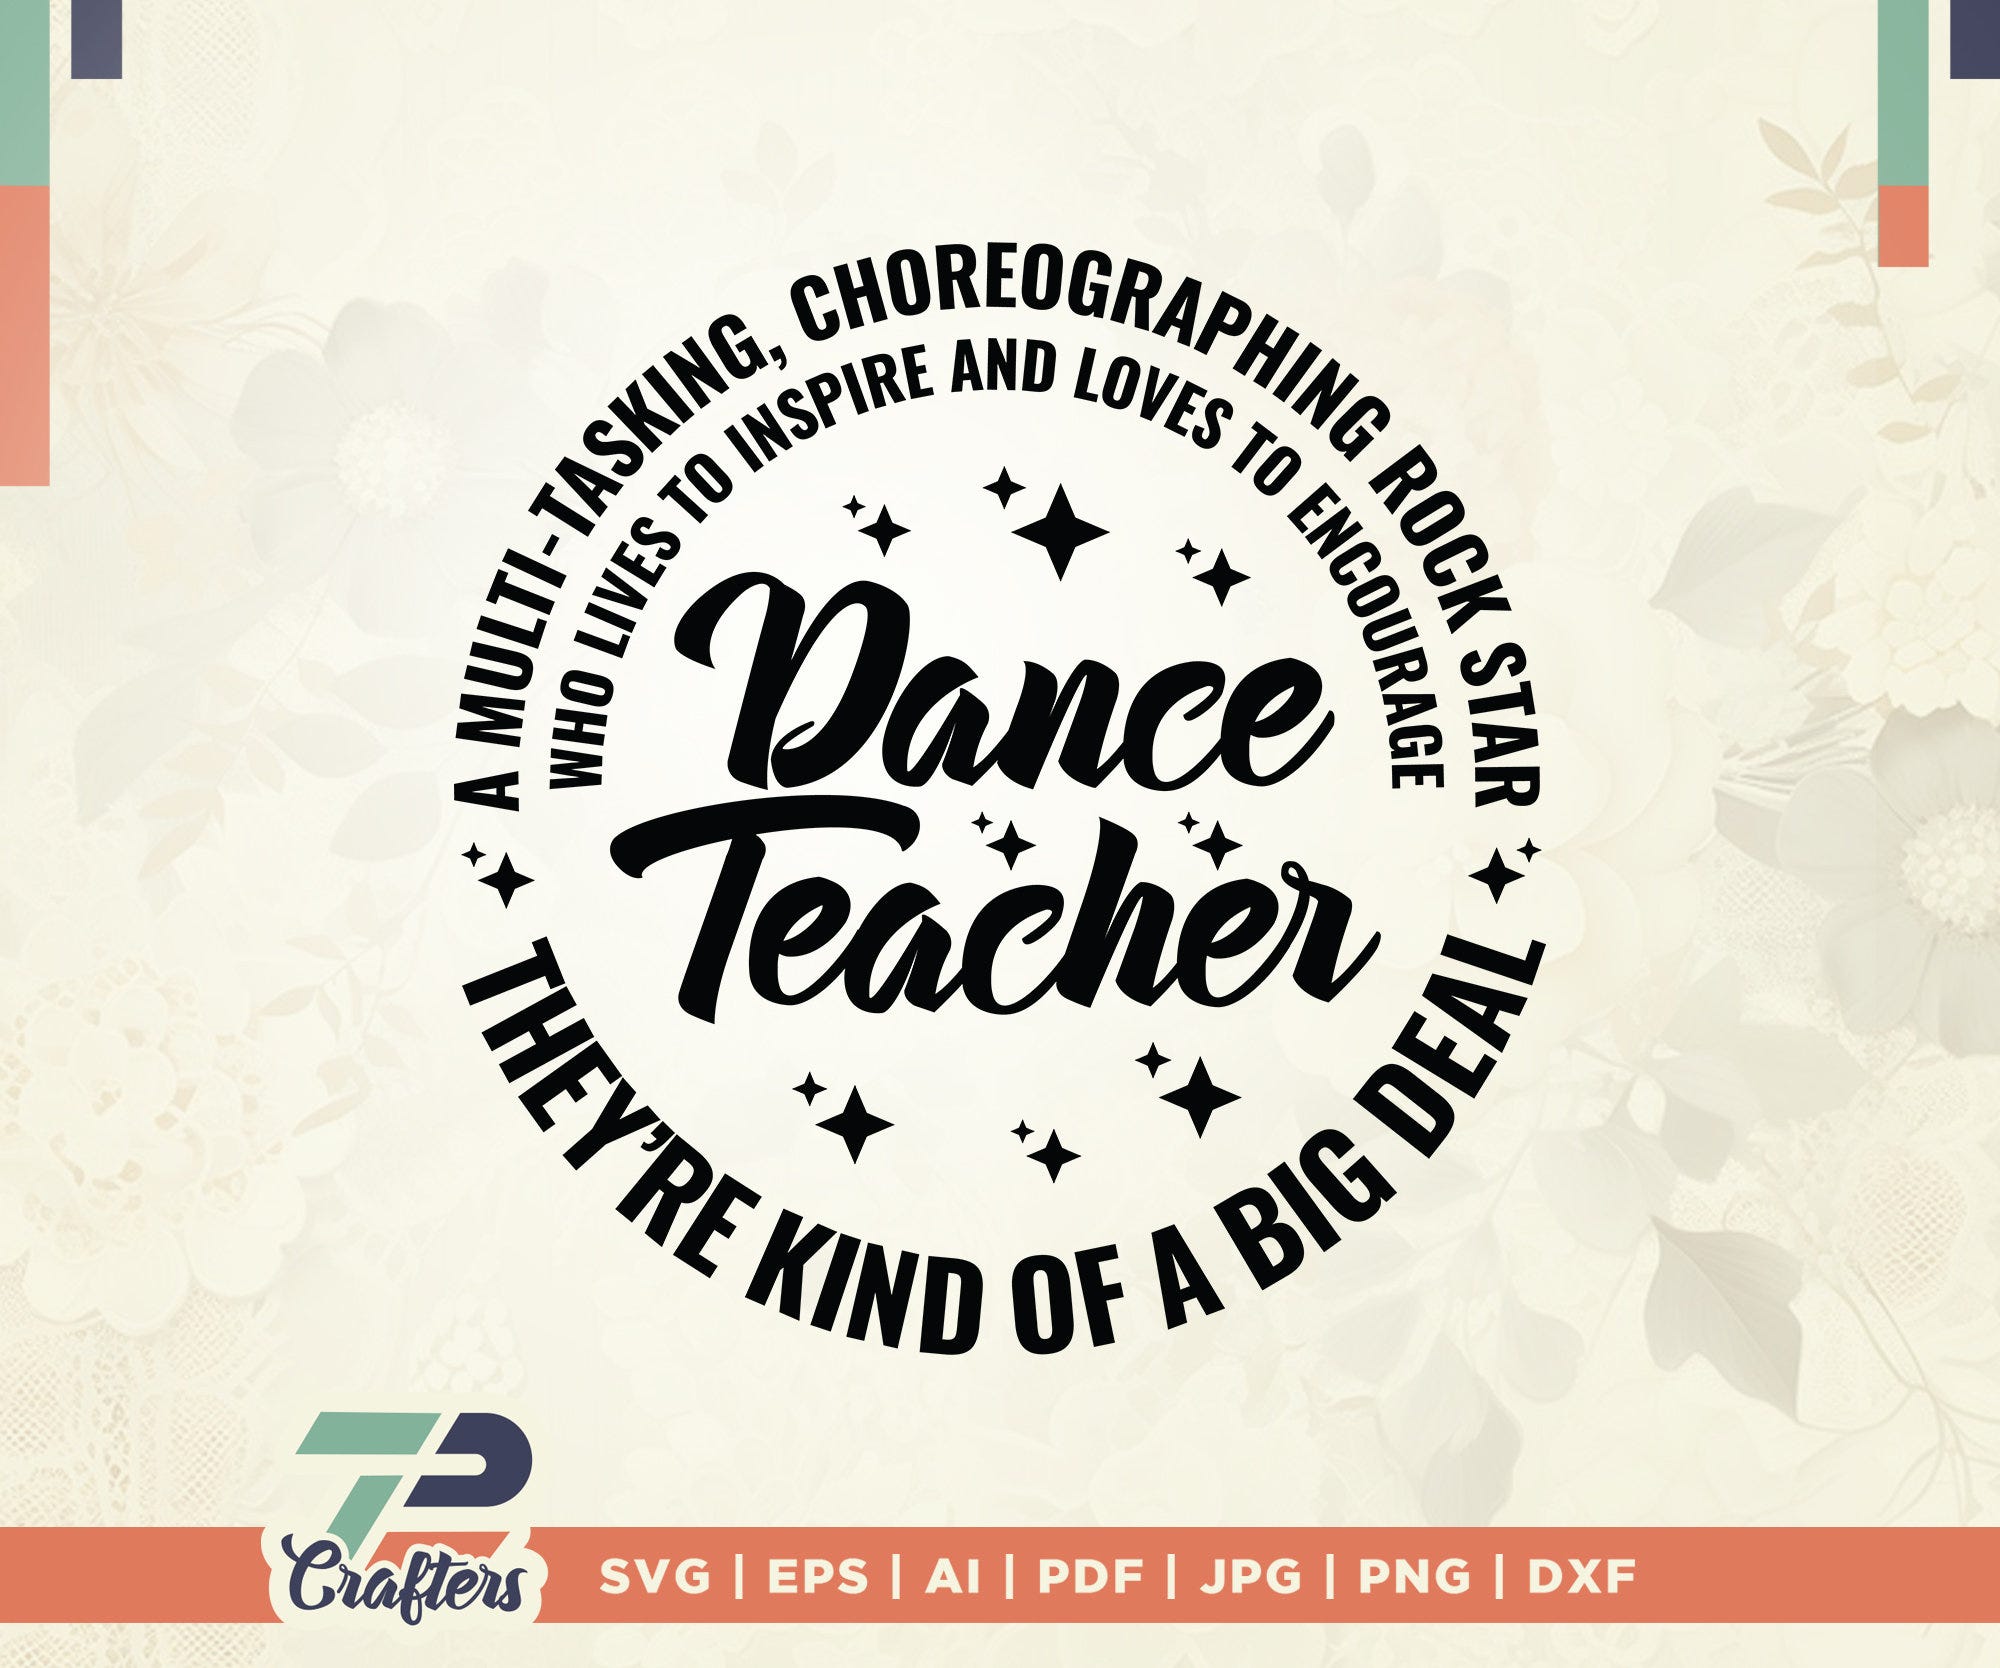 Dance Teacher svg, Dance Teacher Gift, a big real svg, The Best Teachers svg, Dance Teacher appreciation svg, Digital file, cricut files